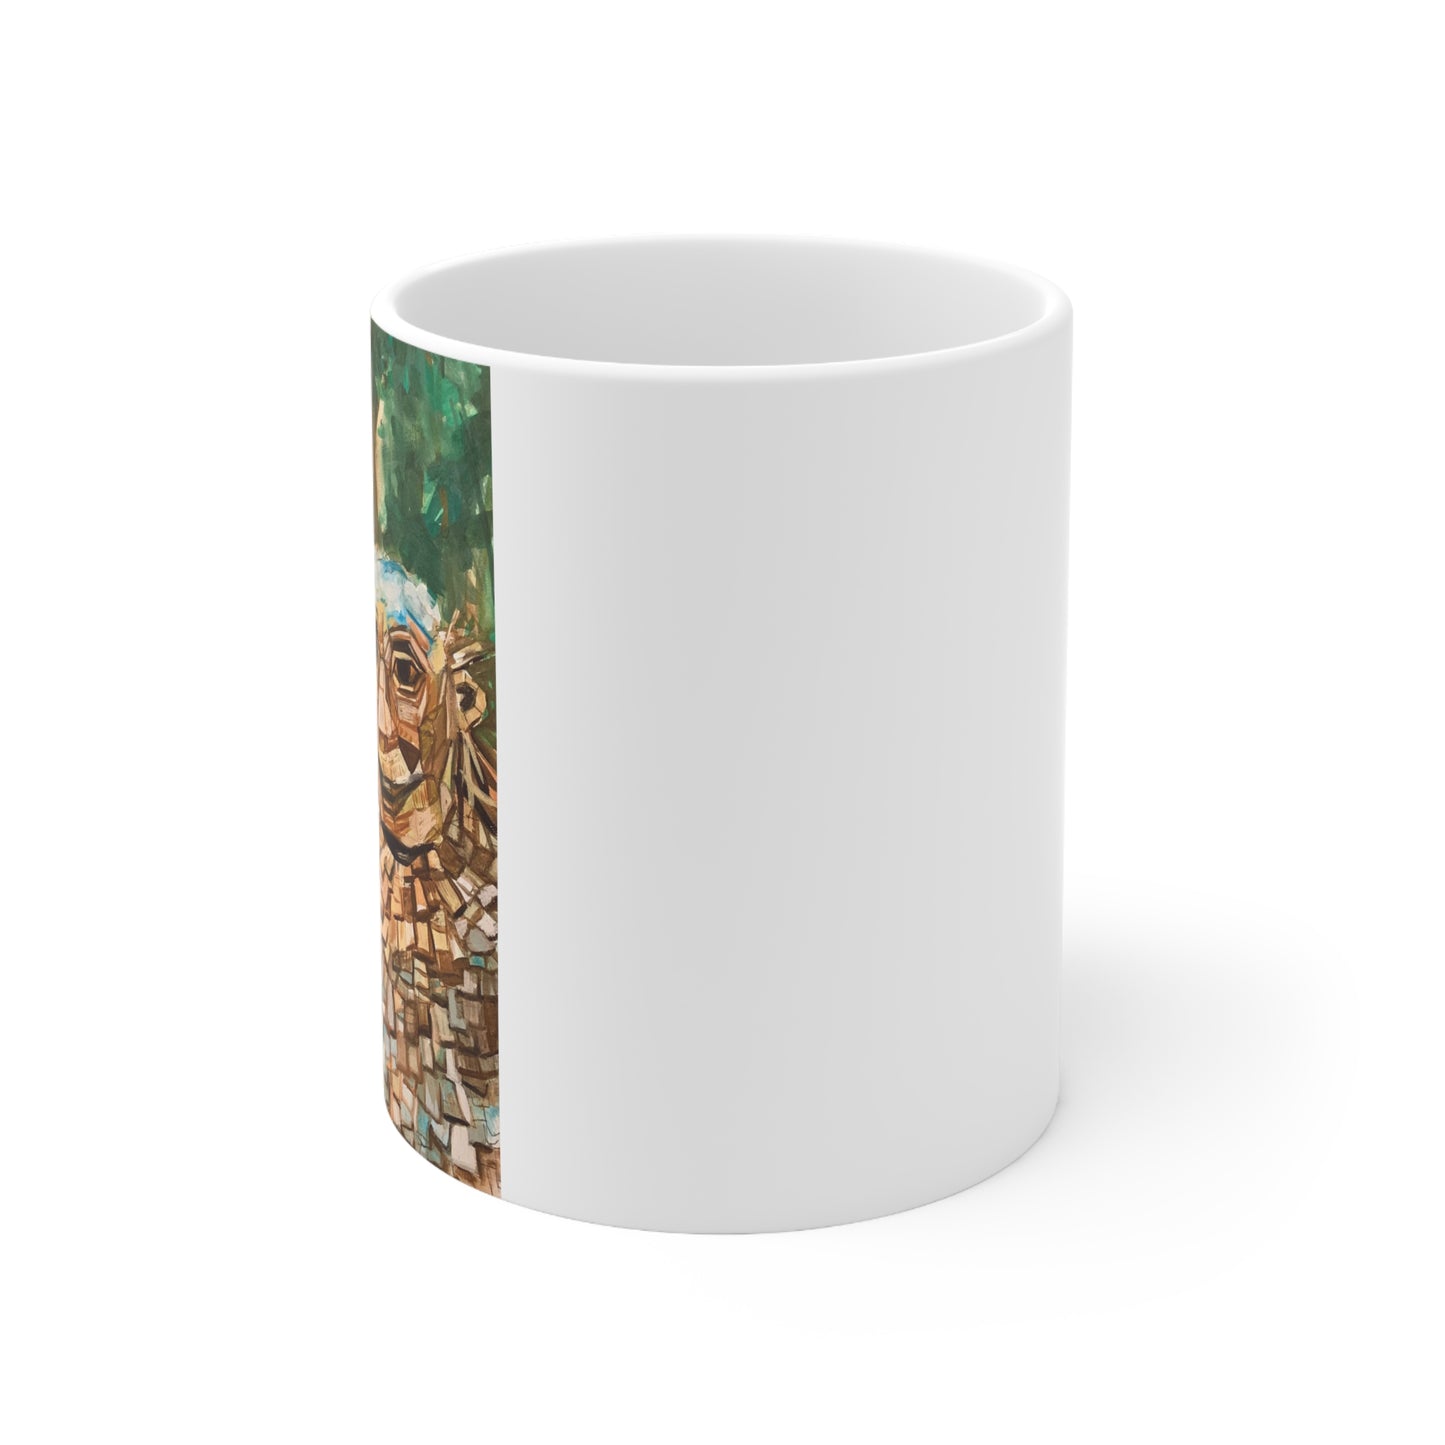 Breck Troll- Ceramic Mug 11oz